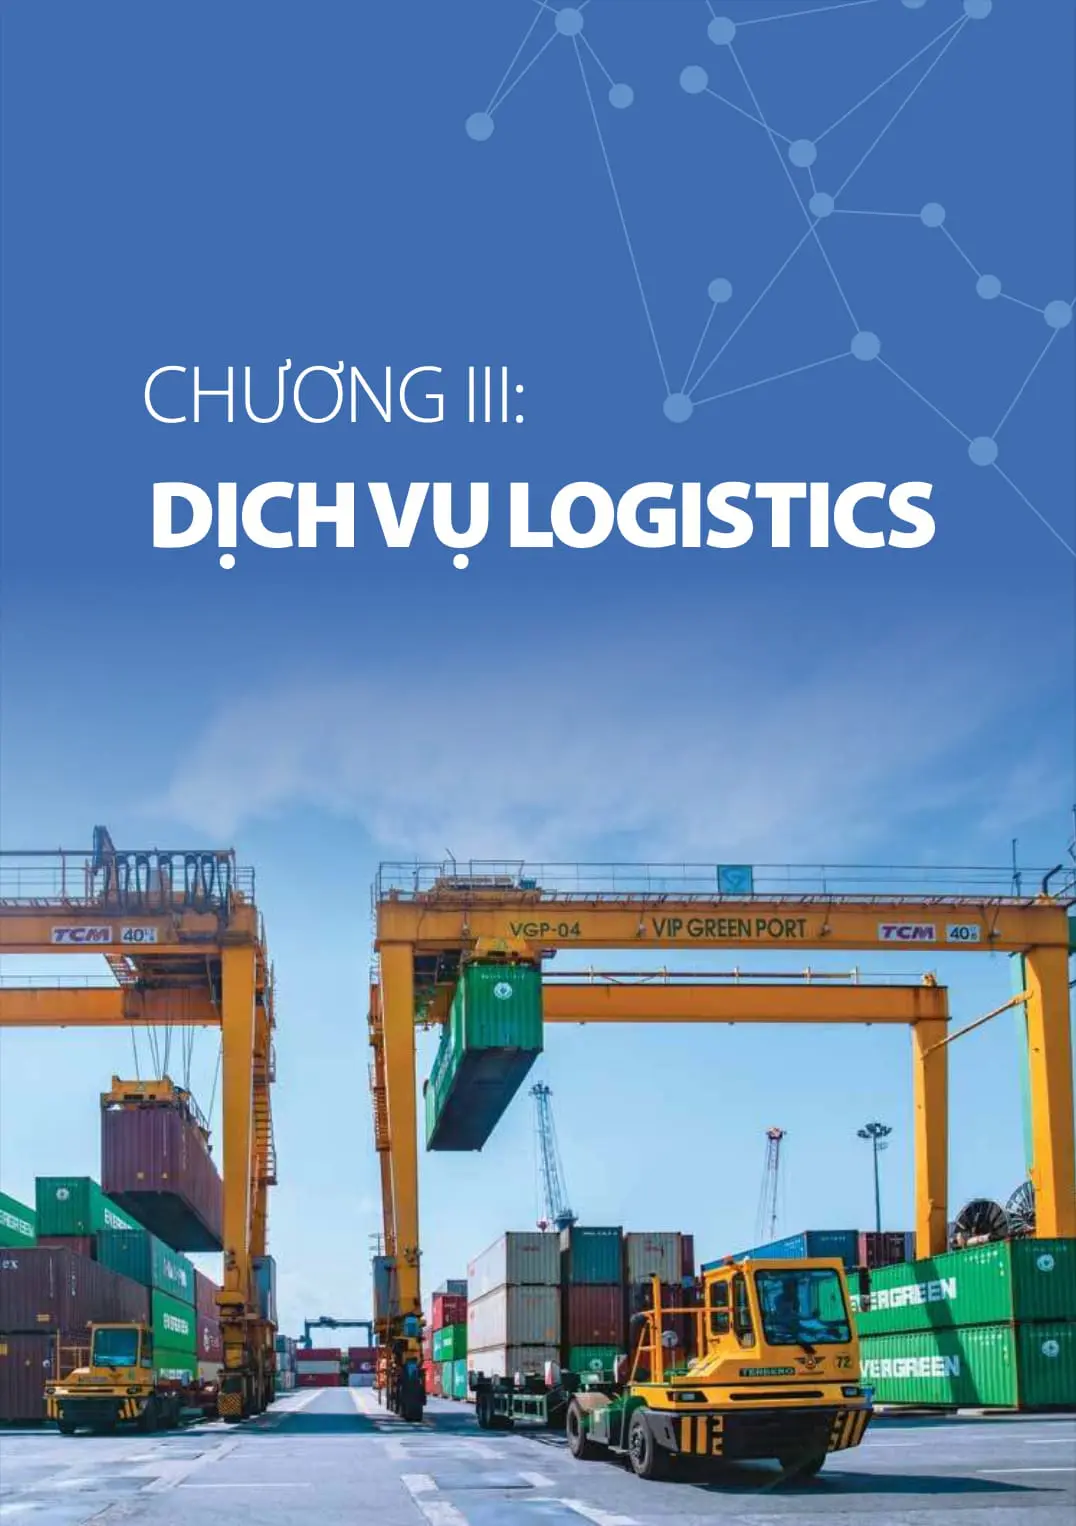 Chương 3 báo cáo logistics Việt Nam 2020: Dịch vụ logistics